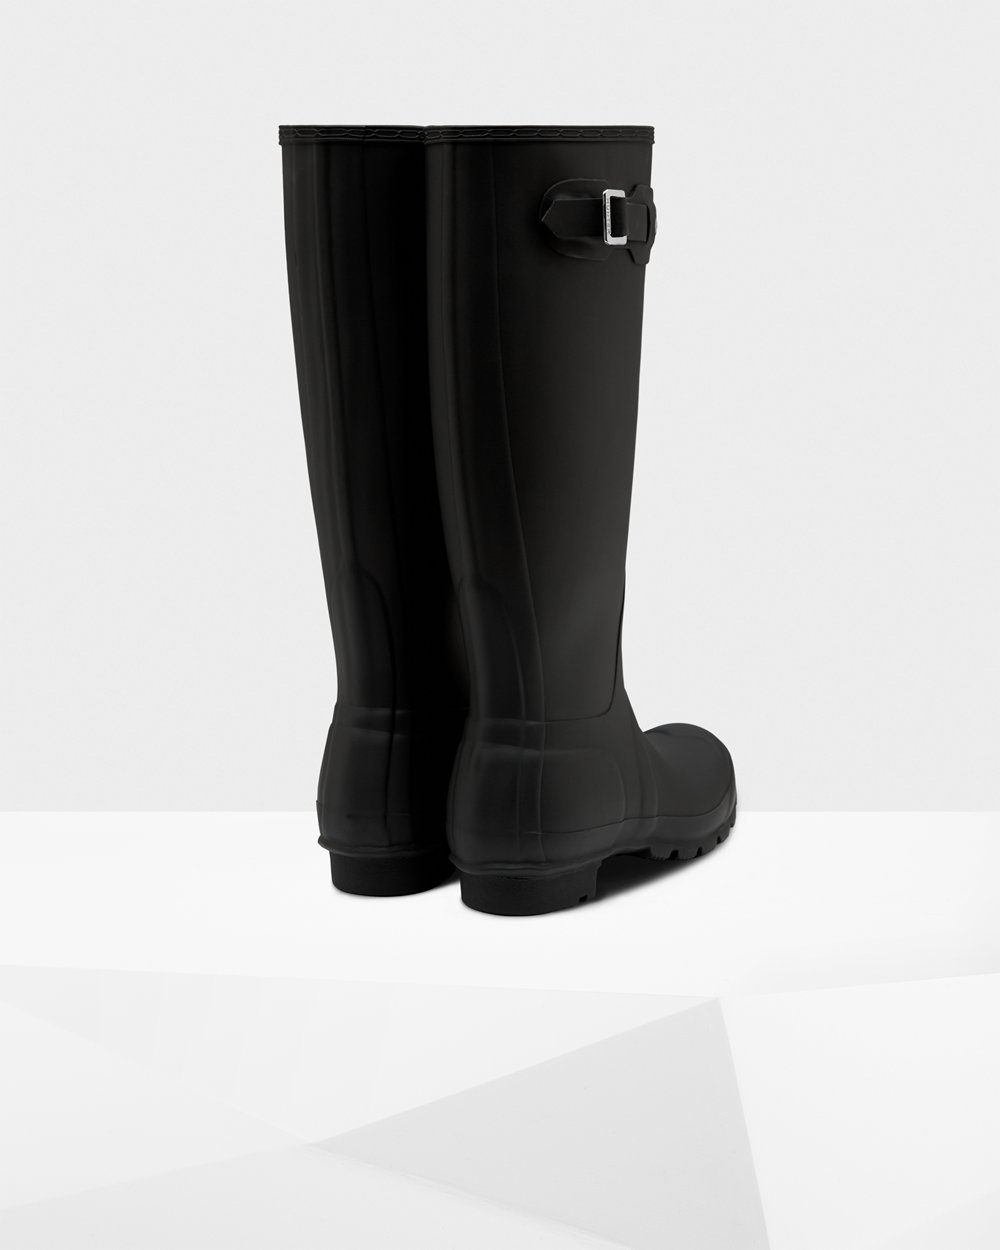 Womens Tall Rain Boots - Hunter Original (57GZEWUTD) - Black